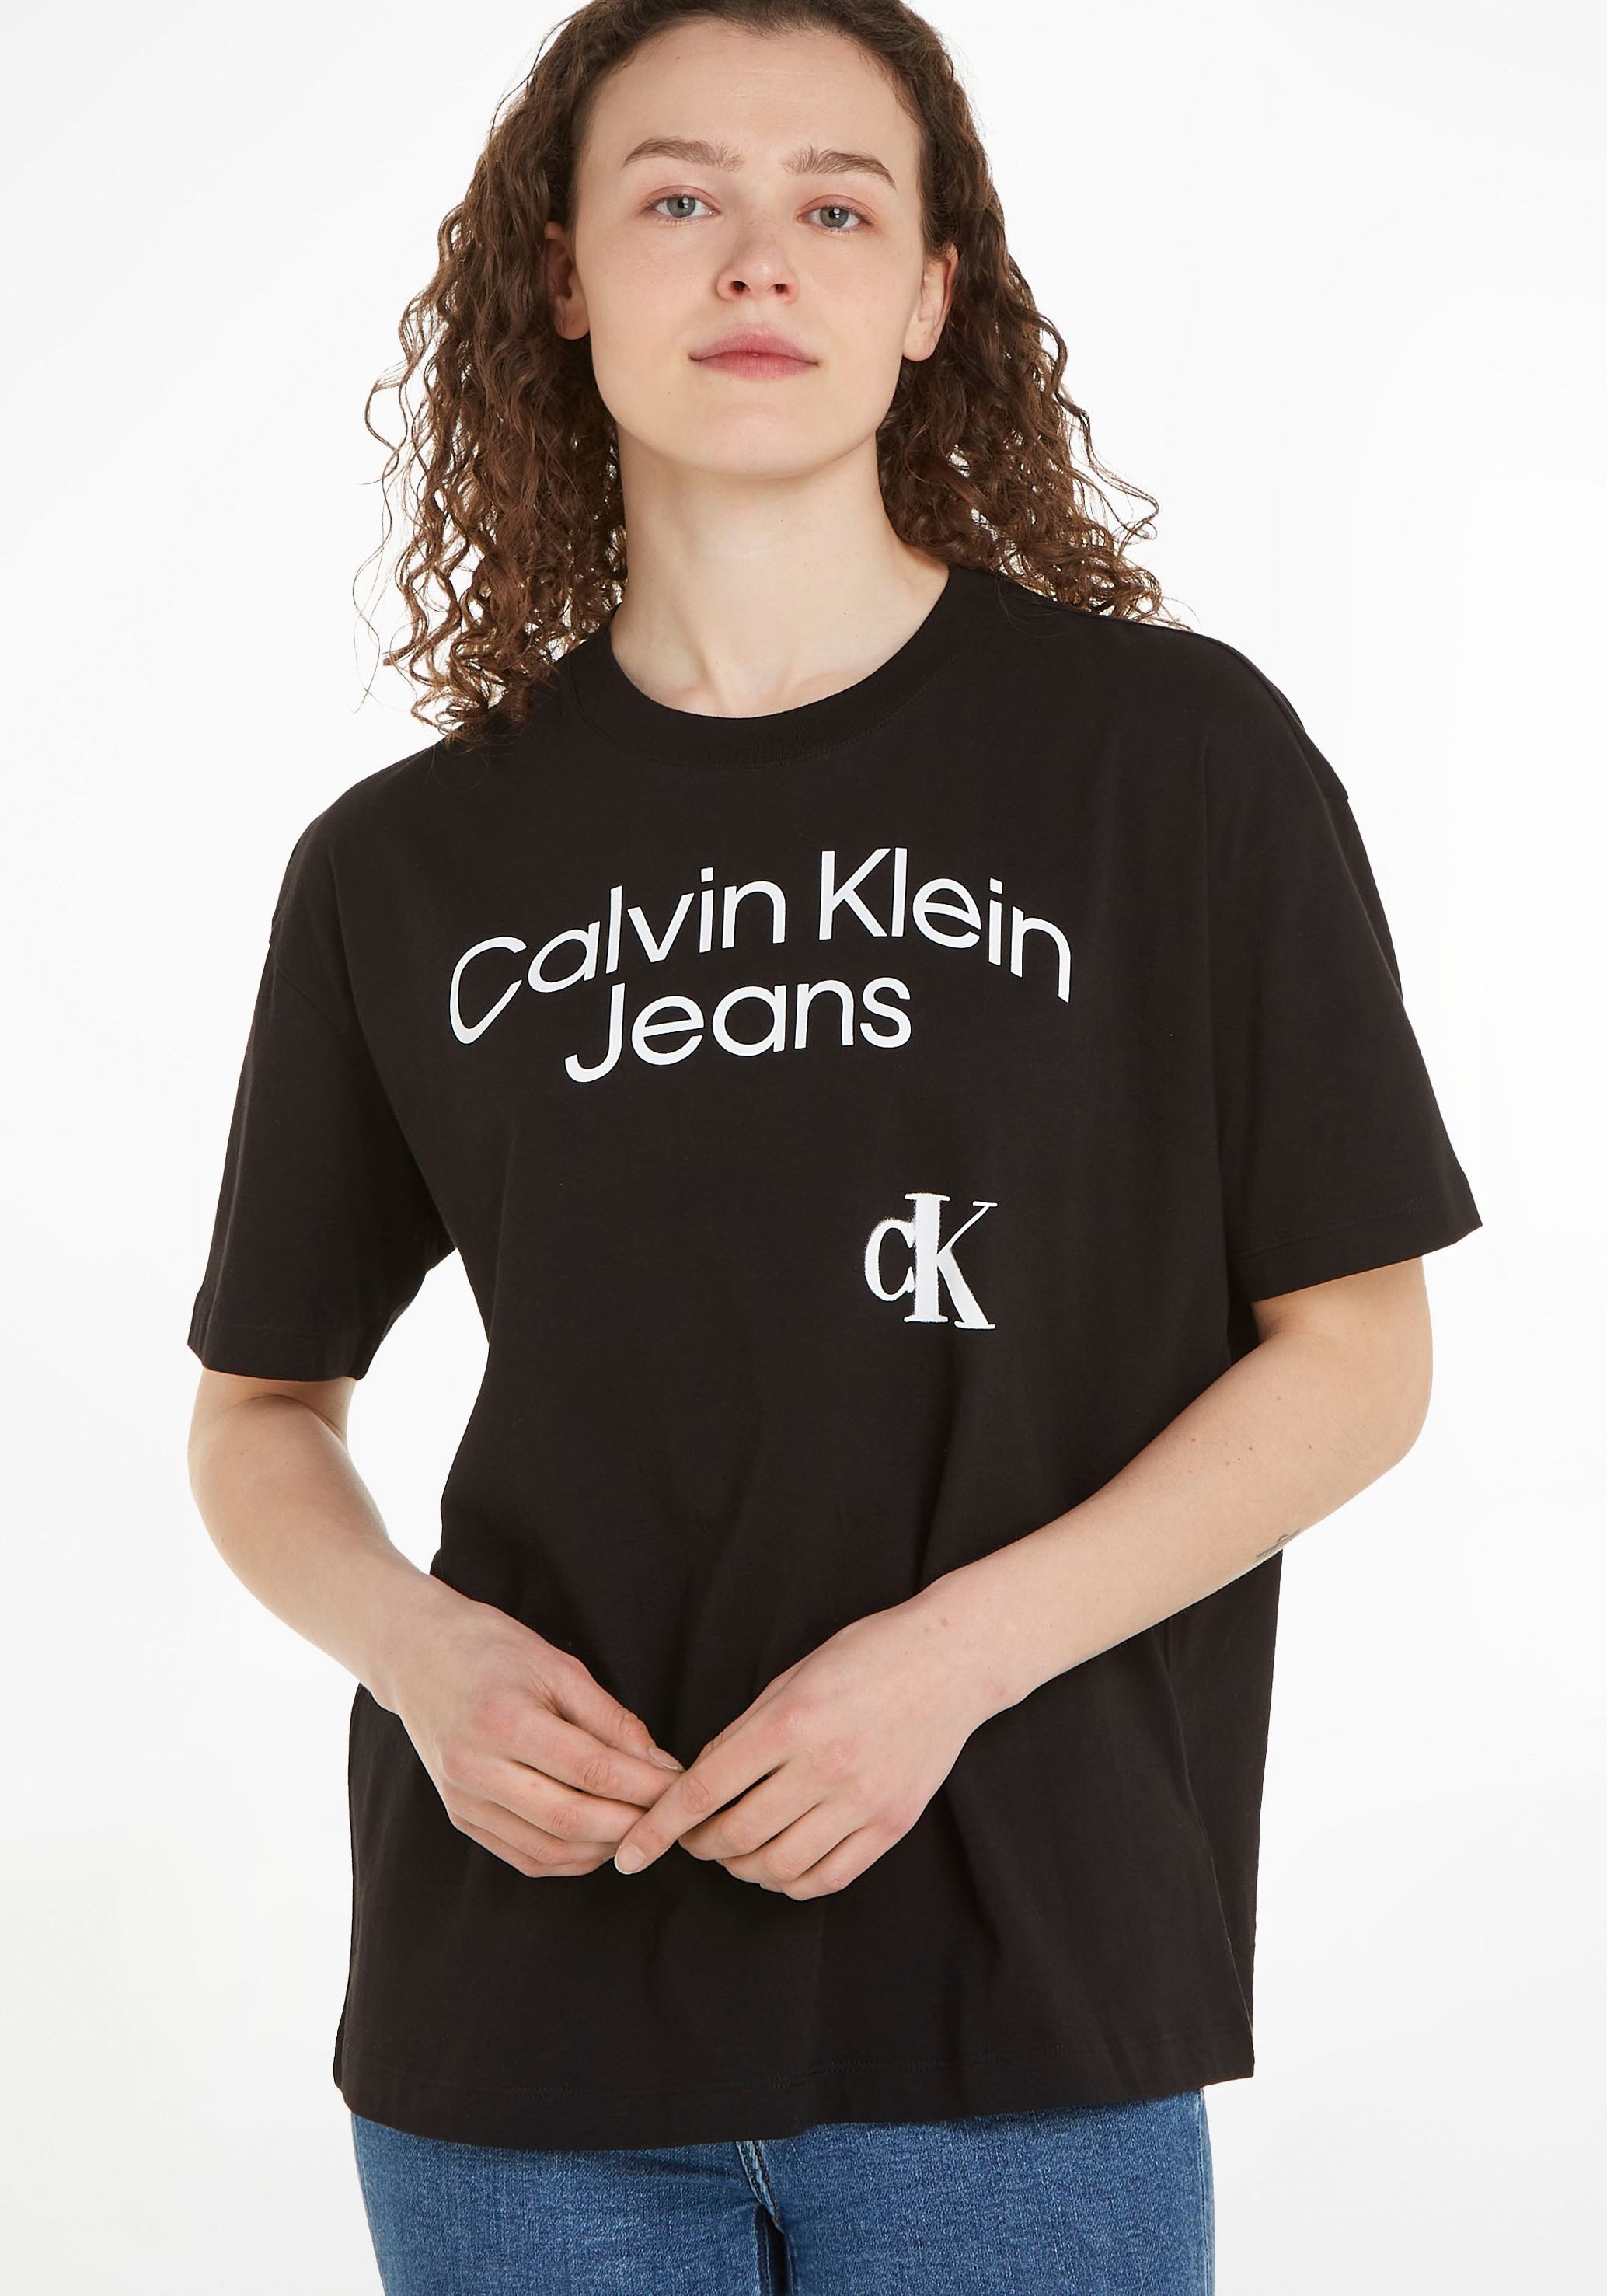 simplement T-Shirt, Jeans Klein Calvin Commander grossem mit Logoschriftzug